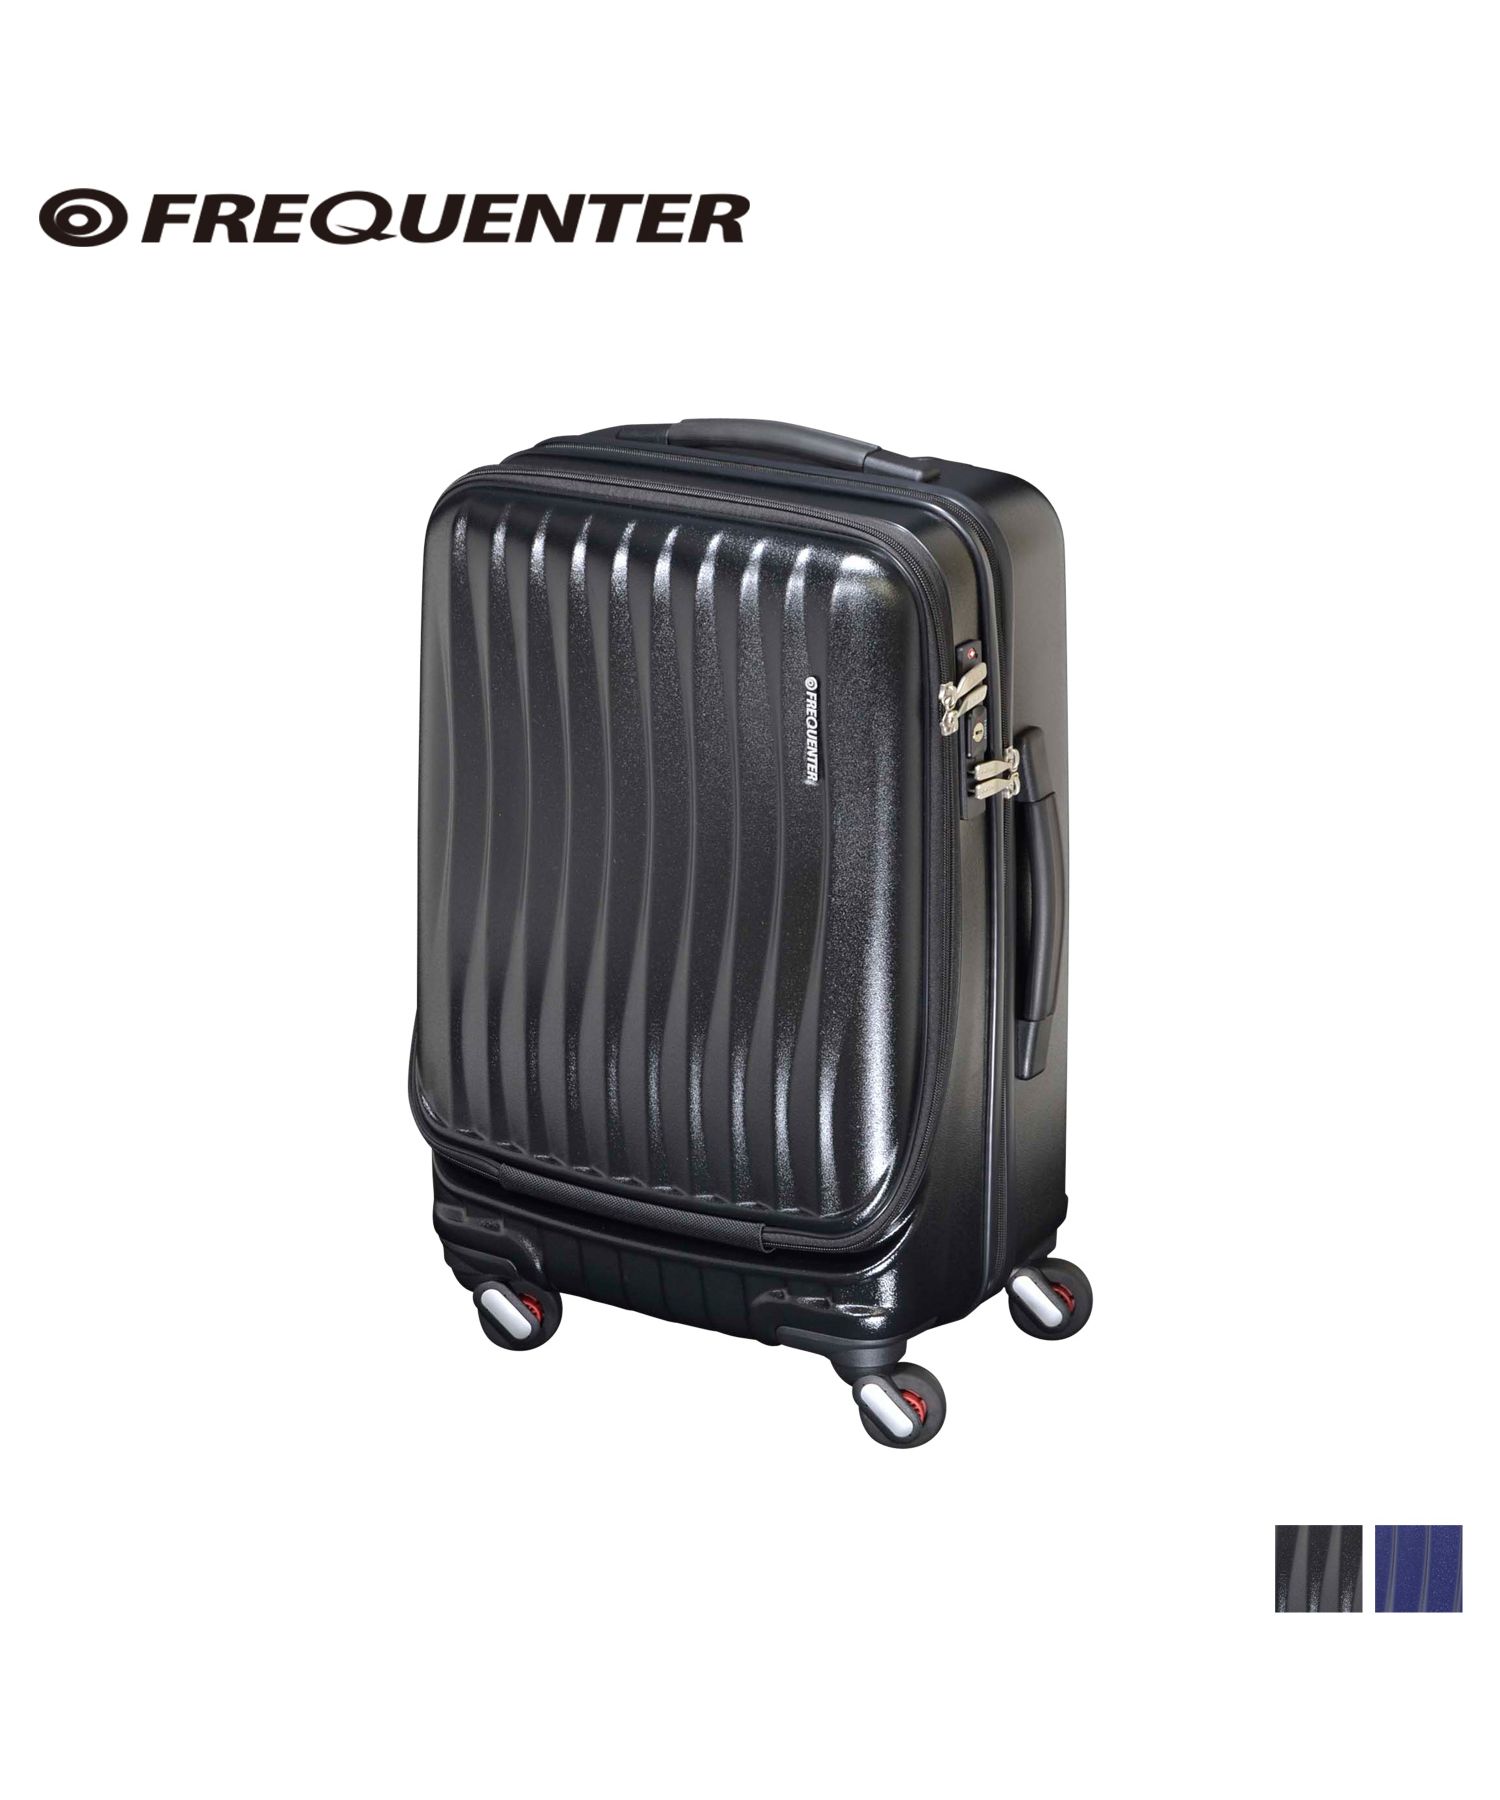 フリクエンター FREQUENTER スーツケース キャリーケース キャリーバッグ クラム アドバンス メンズ レディース 44L CLAM ADVANCE ブ